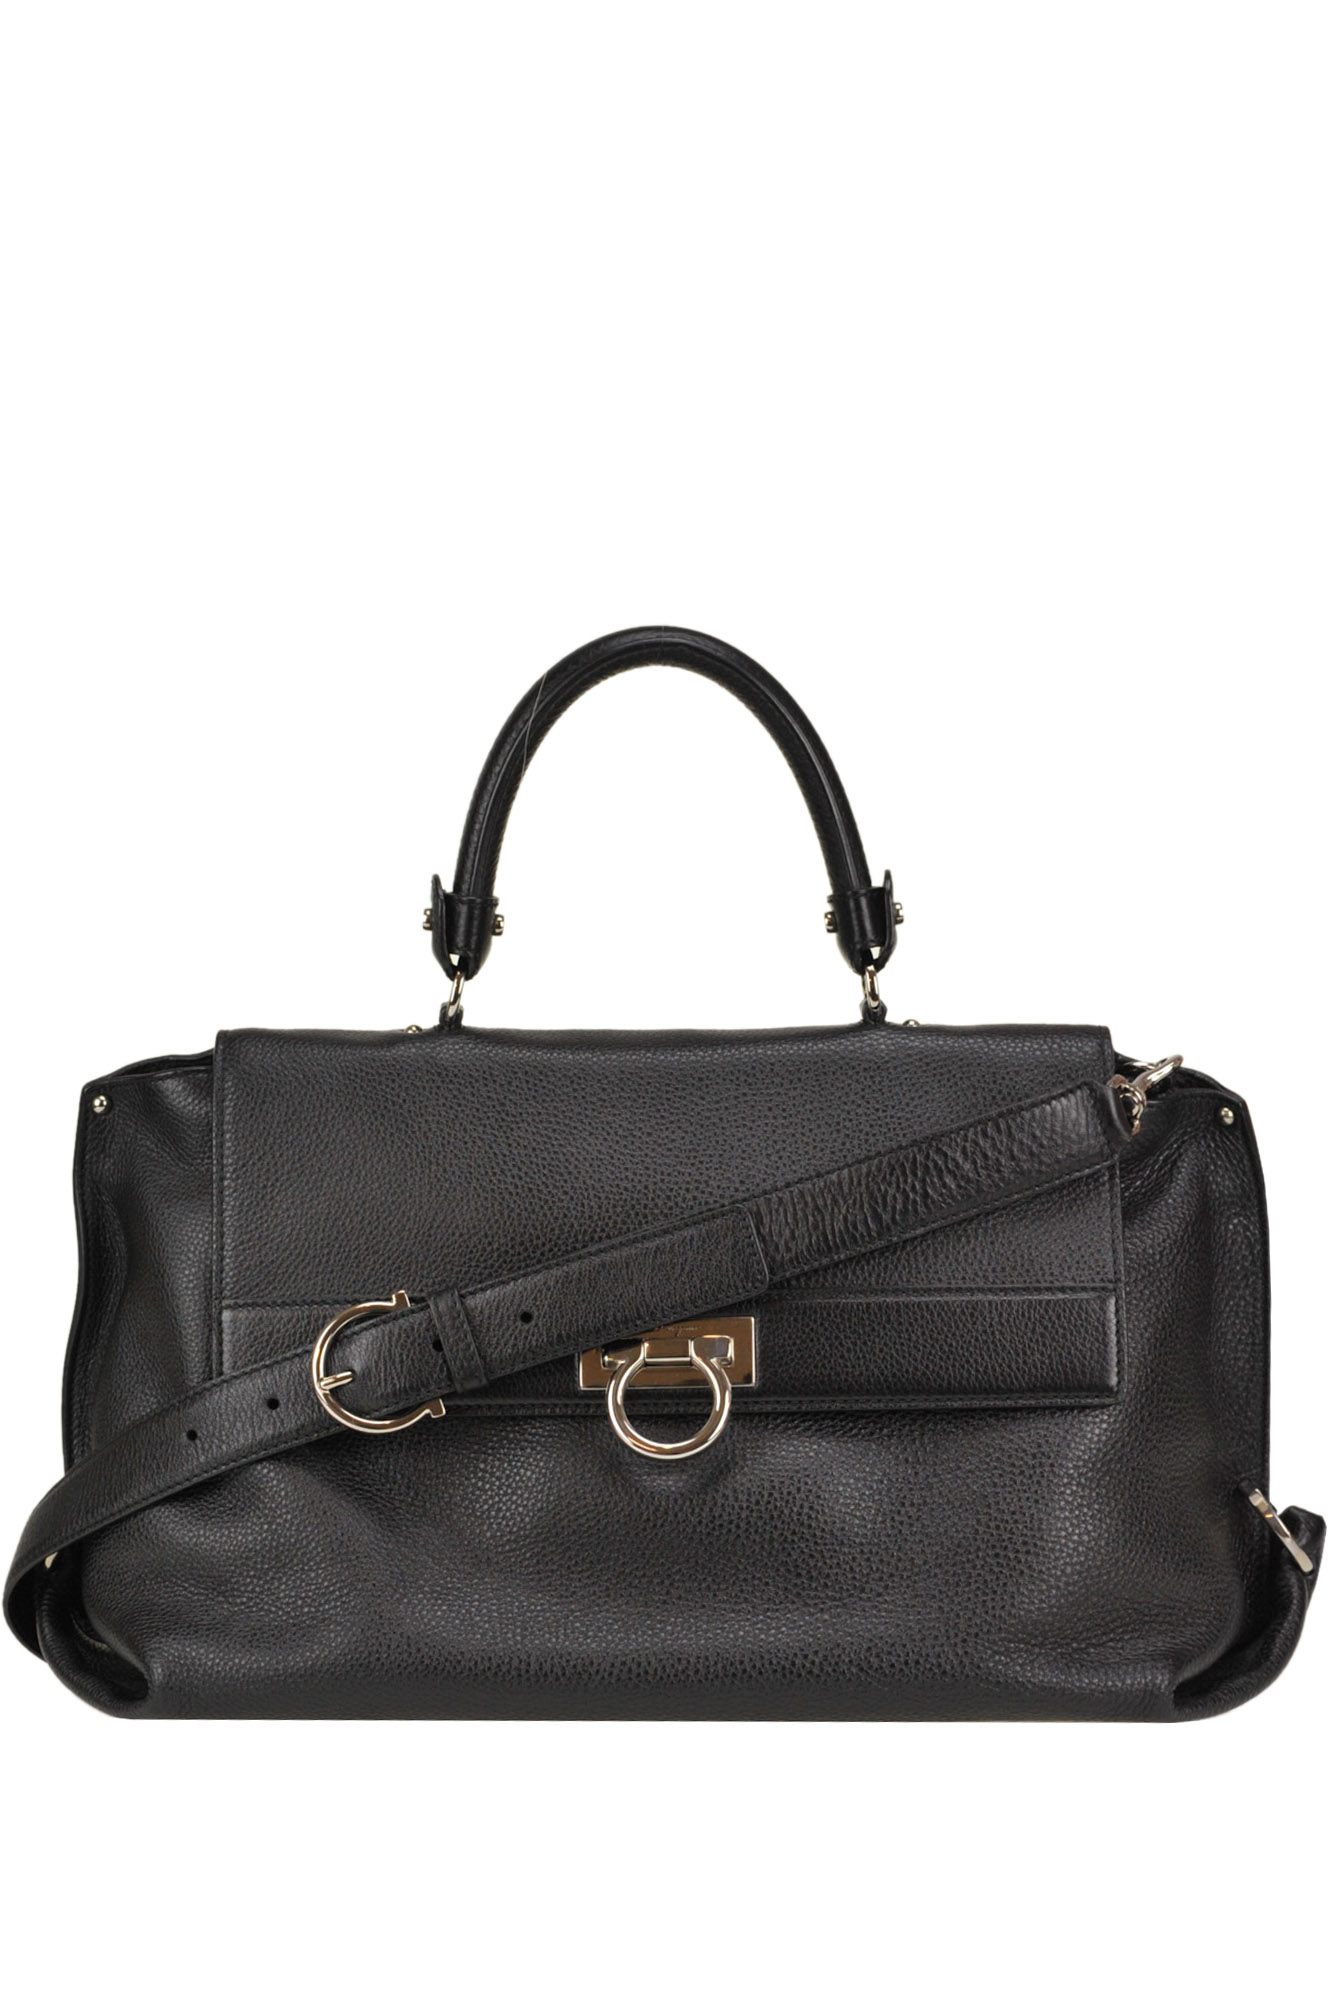 Ferragamo Sofia Grainy Leather Bag In Black